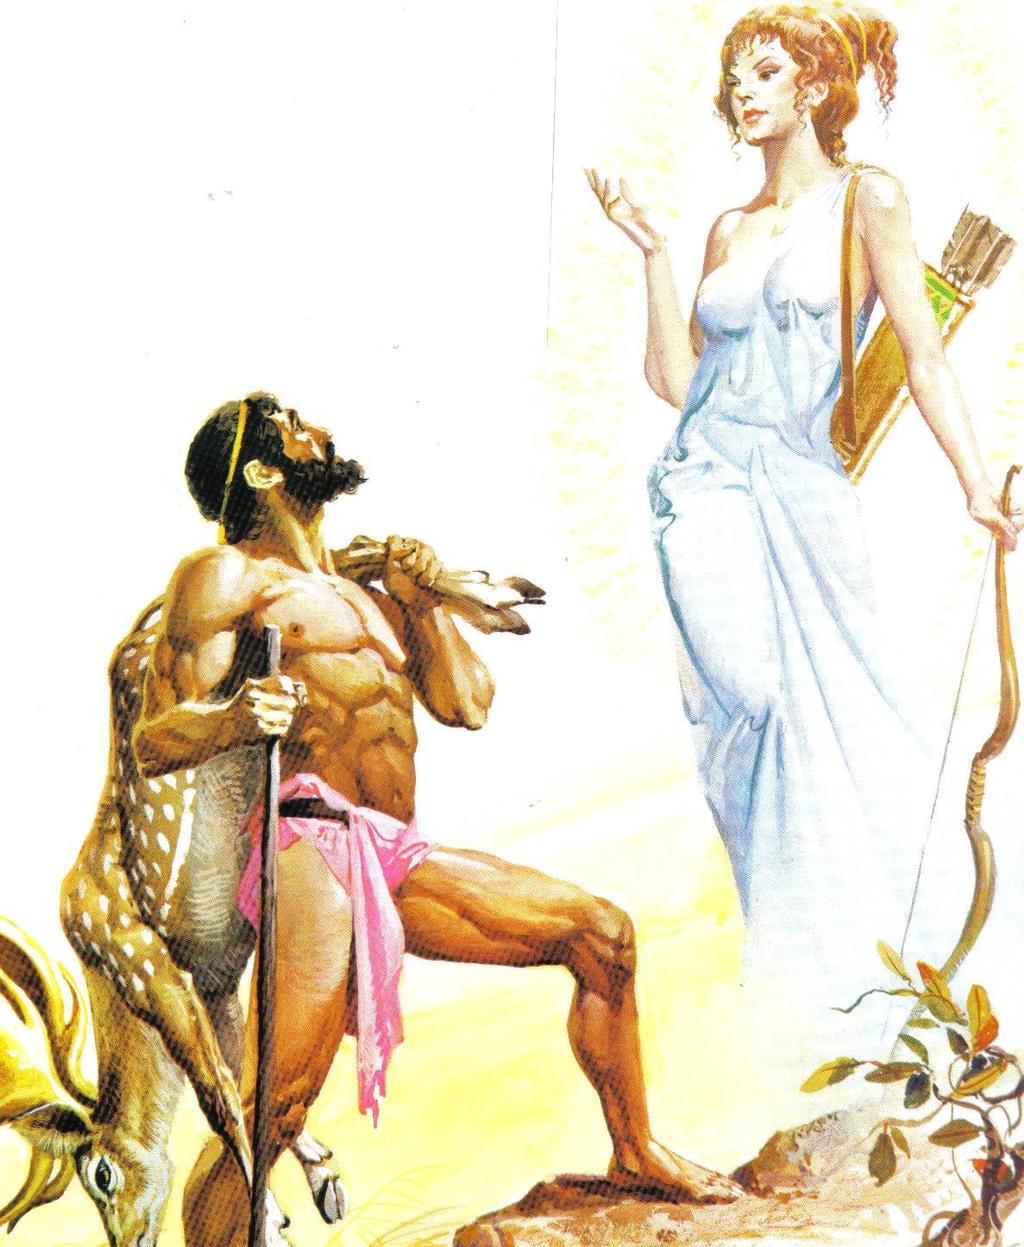 2ος άθλος «Το ελάφι με τα χρυσά κέρατα» Η Άρτεμις ανακρίνει τον Ηρακλή και μετά τον αφήνει να δείξει το ελάφι στον Ευρυσθέα. Τότε η Ελλάδα δεν ήταν ξέφραγο αμπέλι.